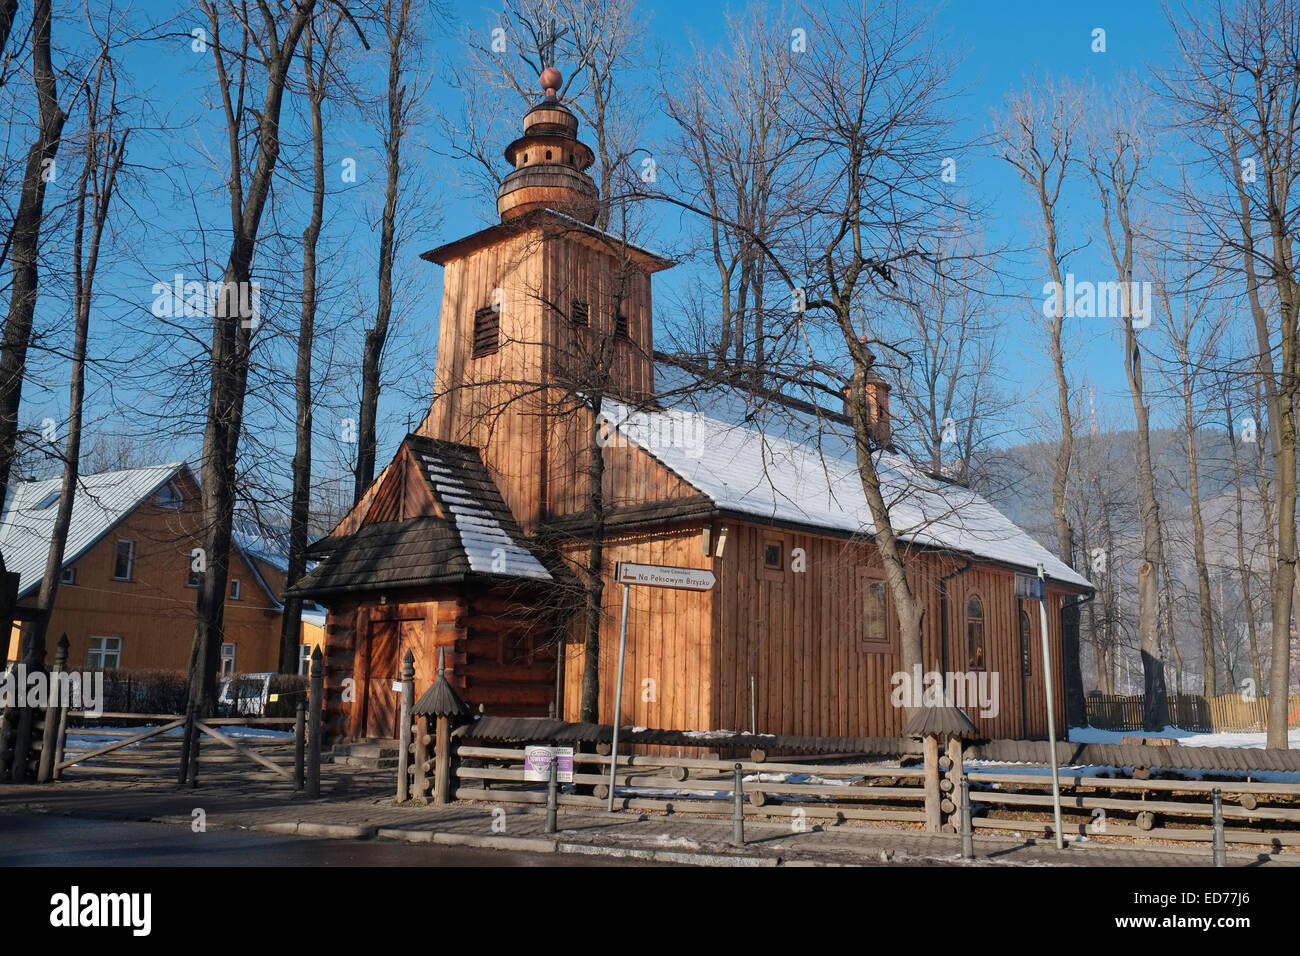 St Clement's church, Zakopane, Poland. Stock Photo